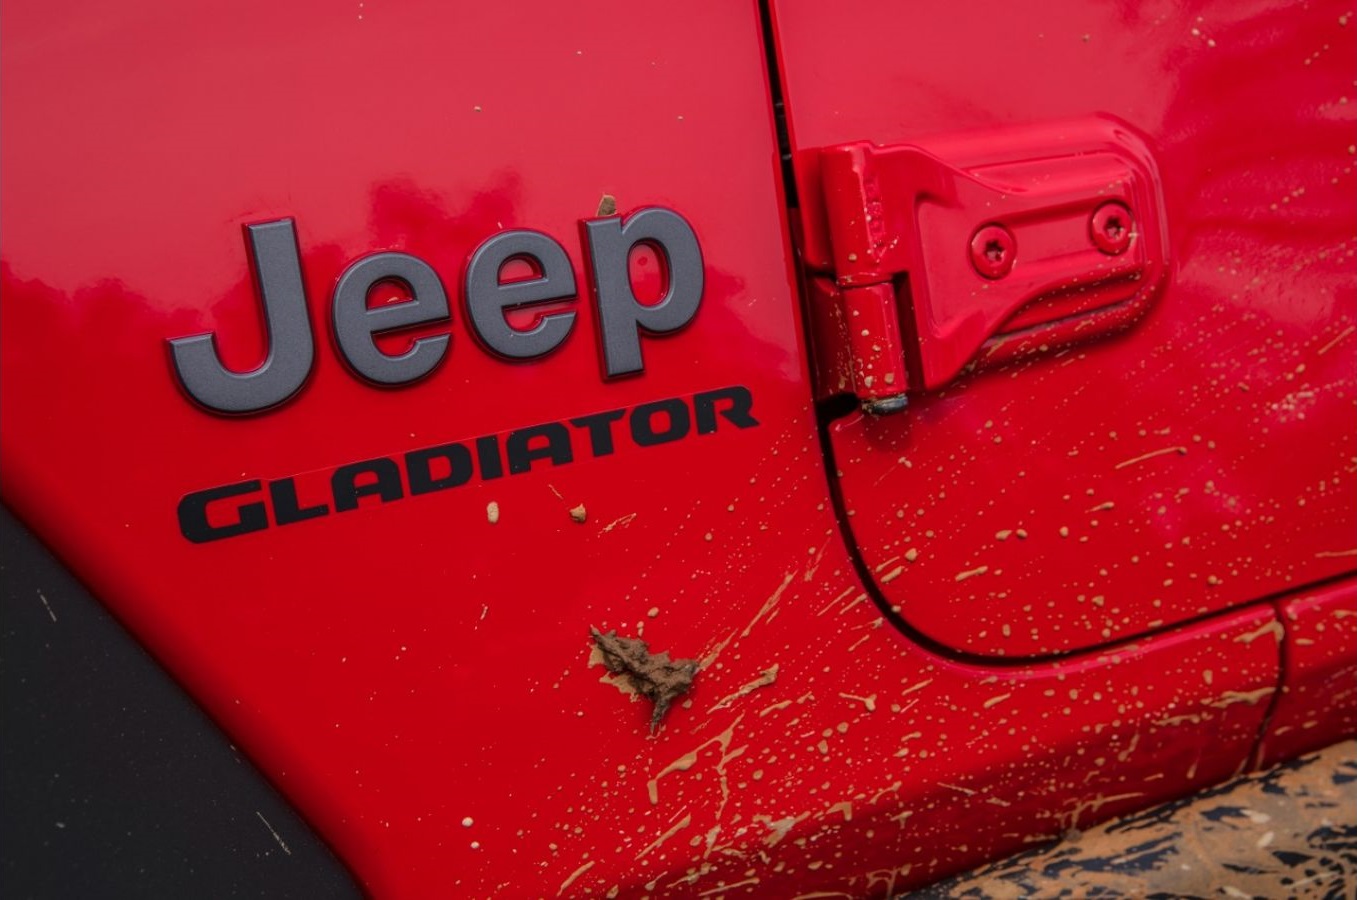 Nova picape Jeep Gladiator tem estreia confirmada para 4 de agosto